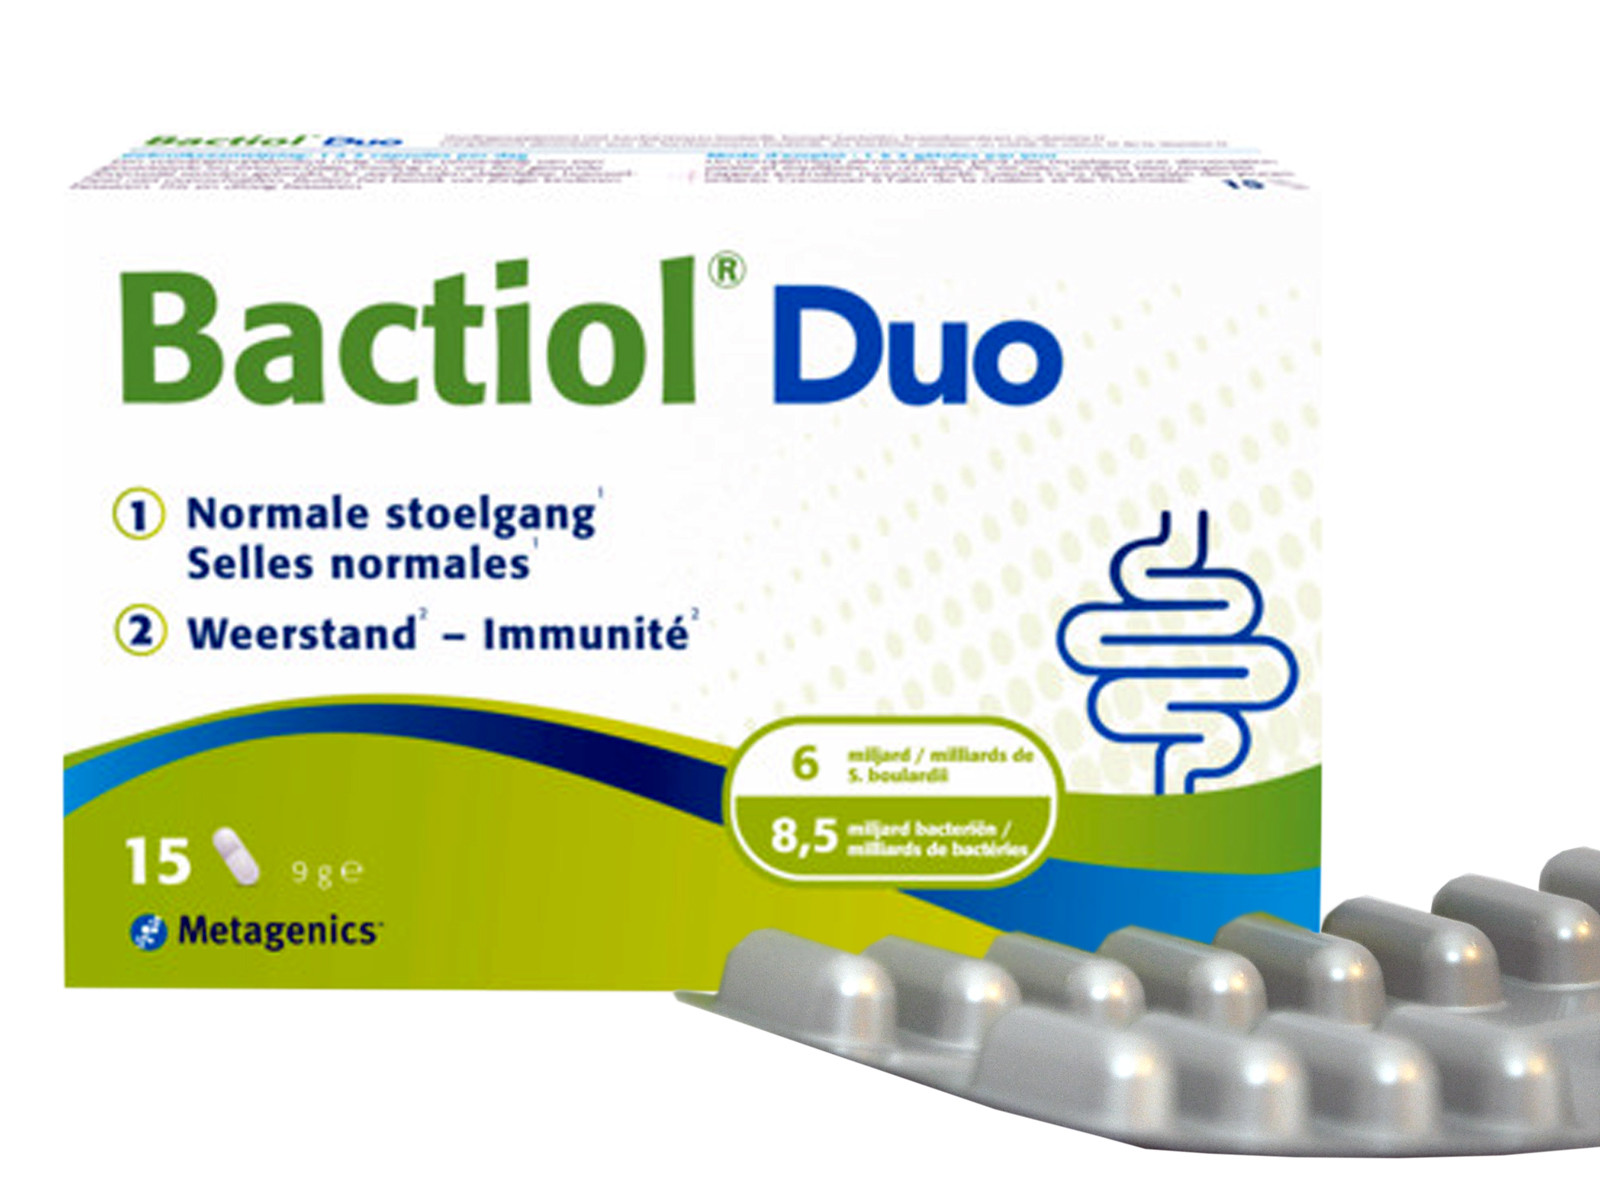 Bactiol Duo